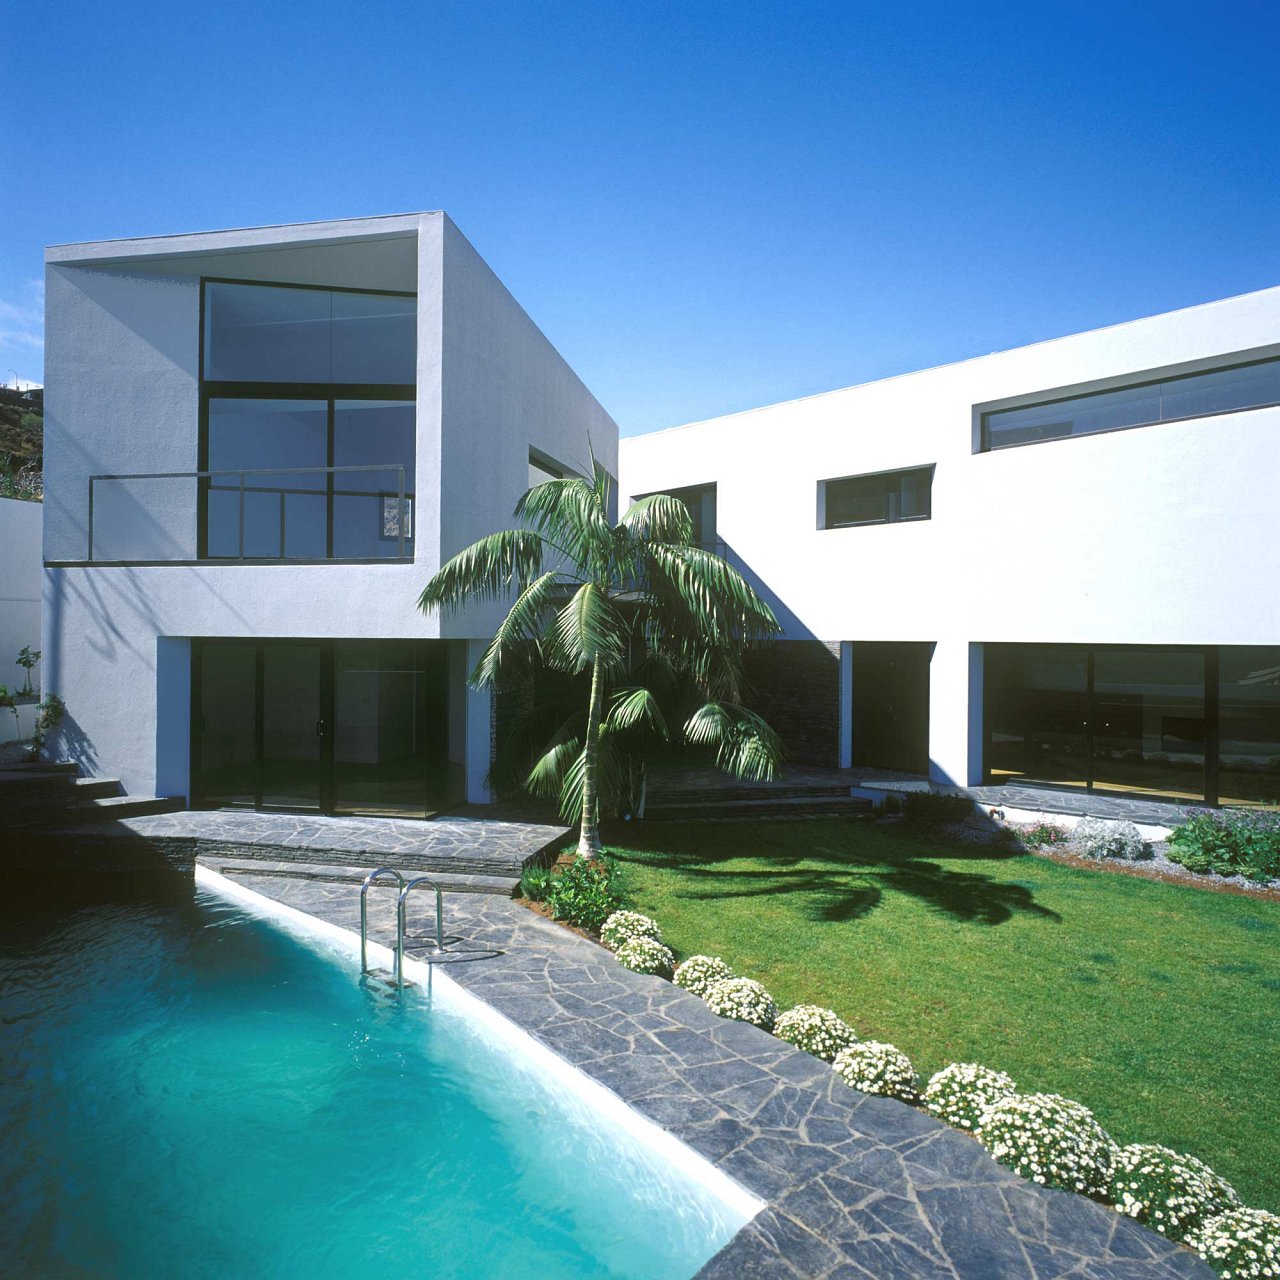 Studio-House in Acorán Santa Cruz de Tenerife